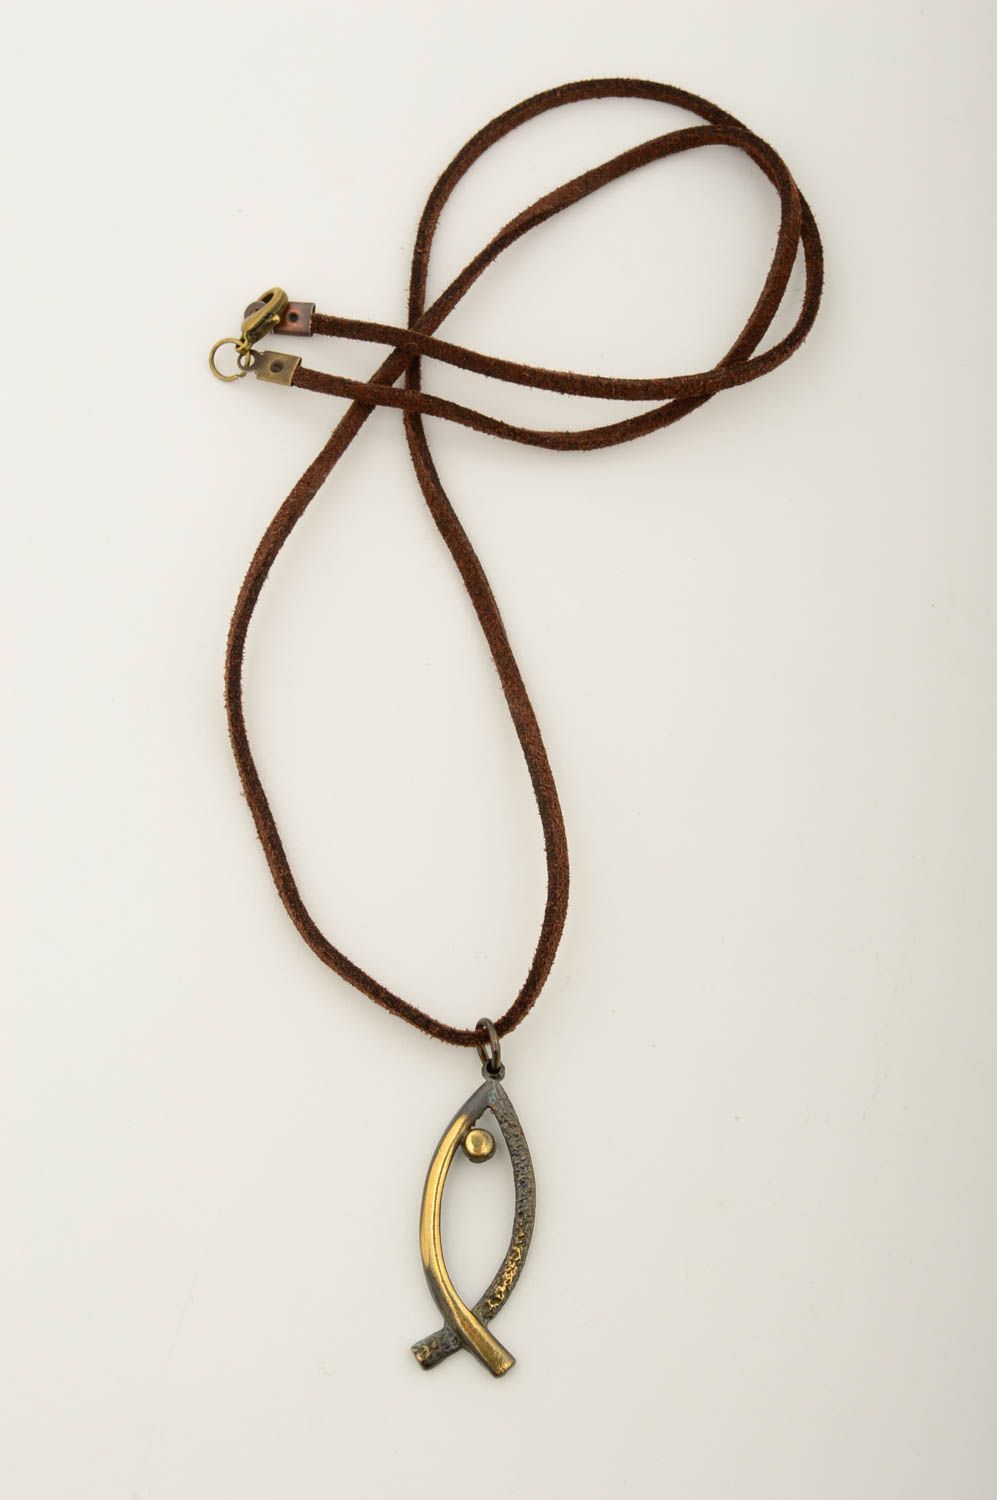 Кулон ручной работы из бронзы подвеска на шею оригинальный кулон на шнурке рыбка фото 3